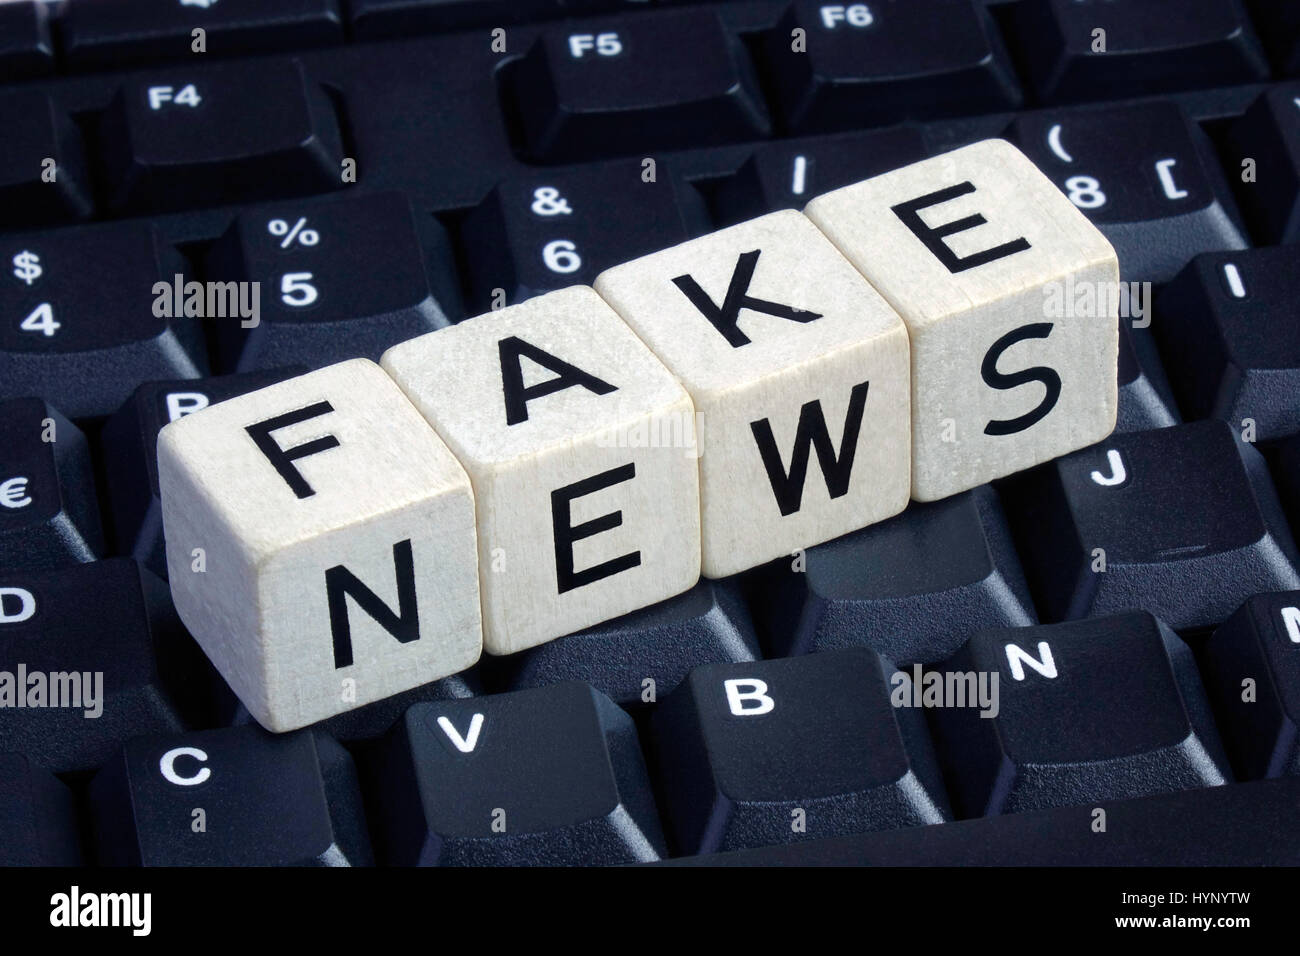 ILLUSTRATION - vier Buchstaben-Würfel buchstabieren der Wörter "Fake News"  auf einer Computertastatur. Aufgenommen am 18.12.2016. "Fake News" bezieht  sich auf falsche und falsche Informationen, oft absichtlich verbreitet über  elektronische Kanäle (vor ...